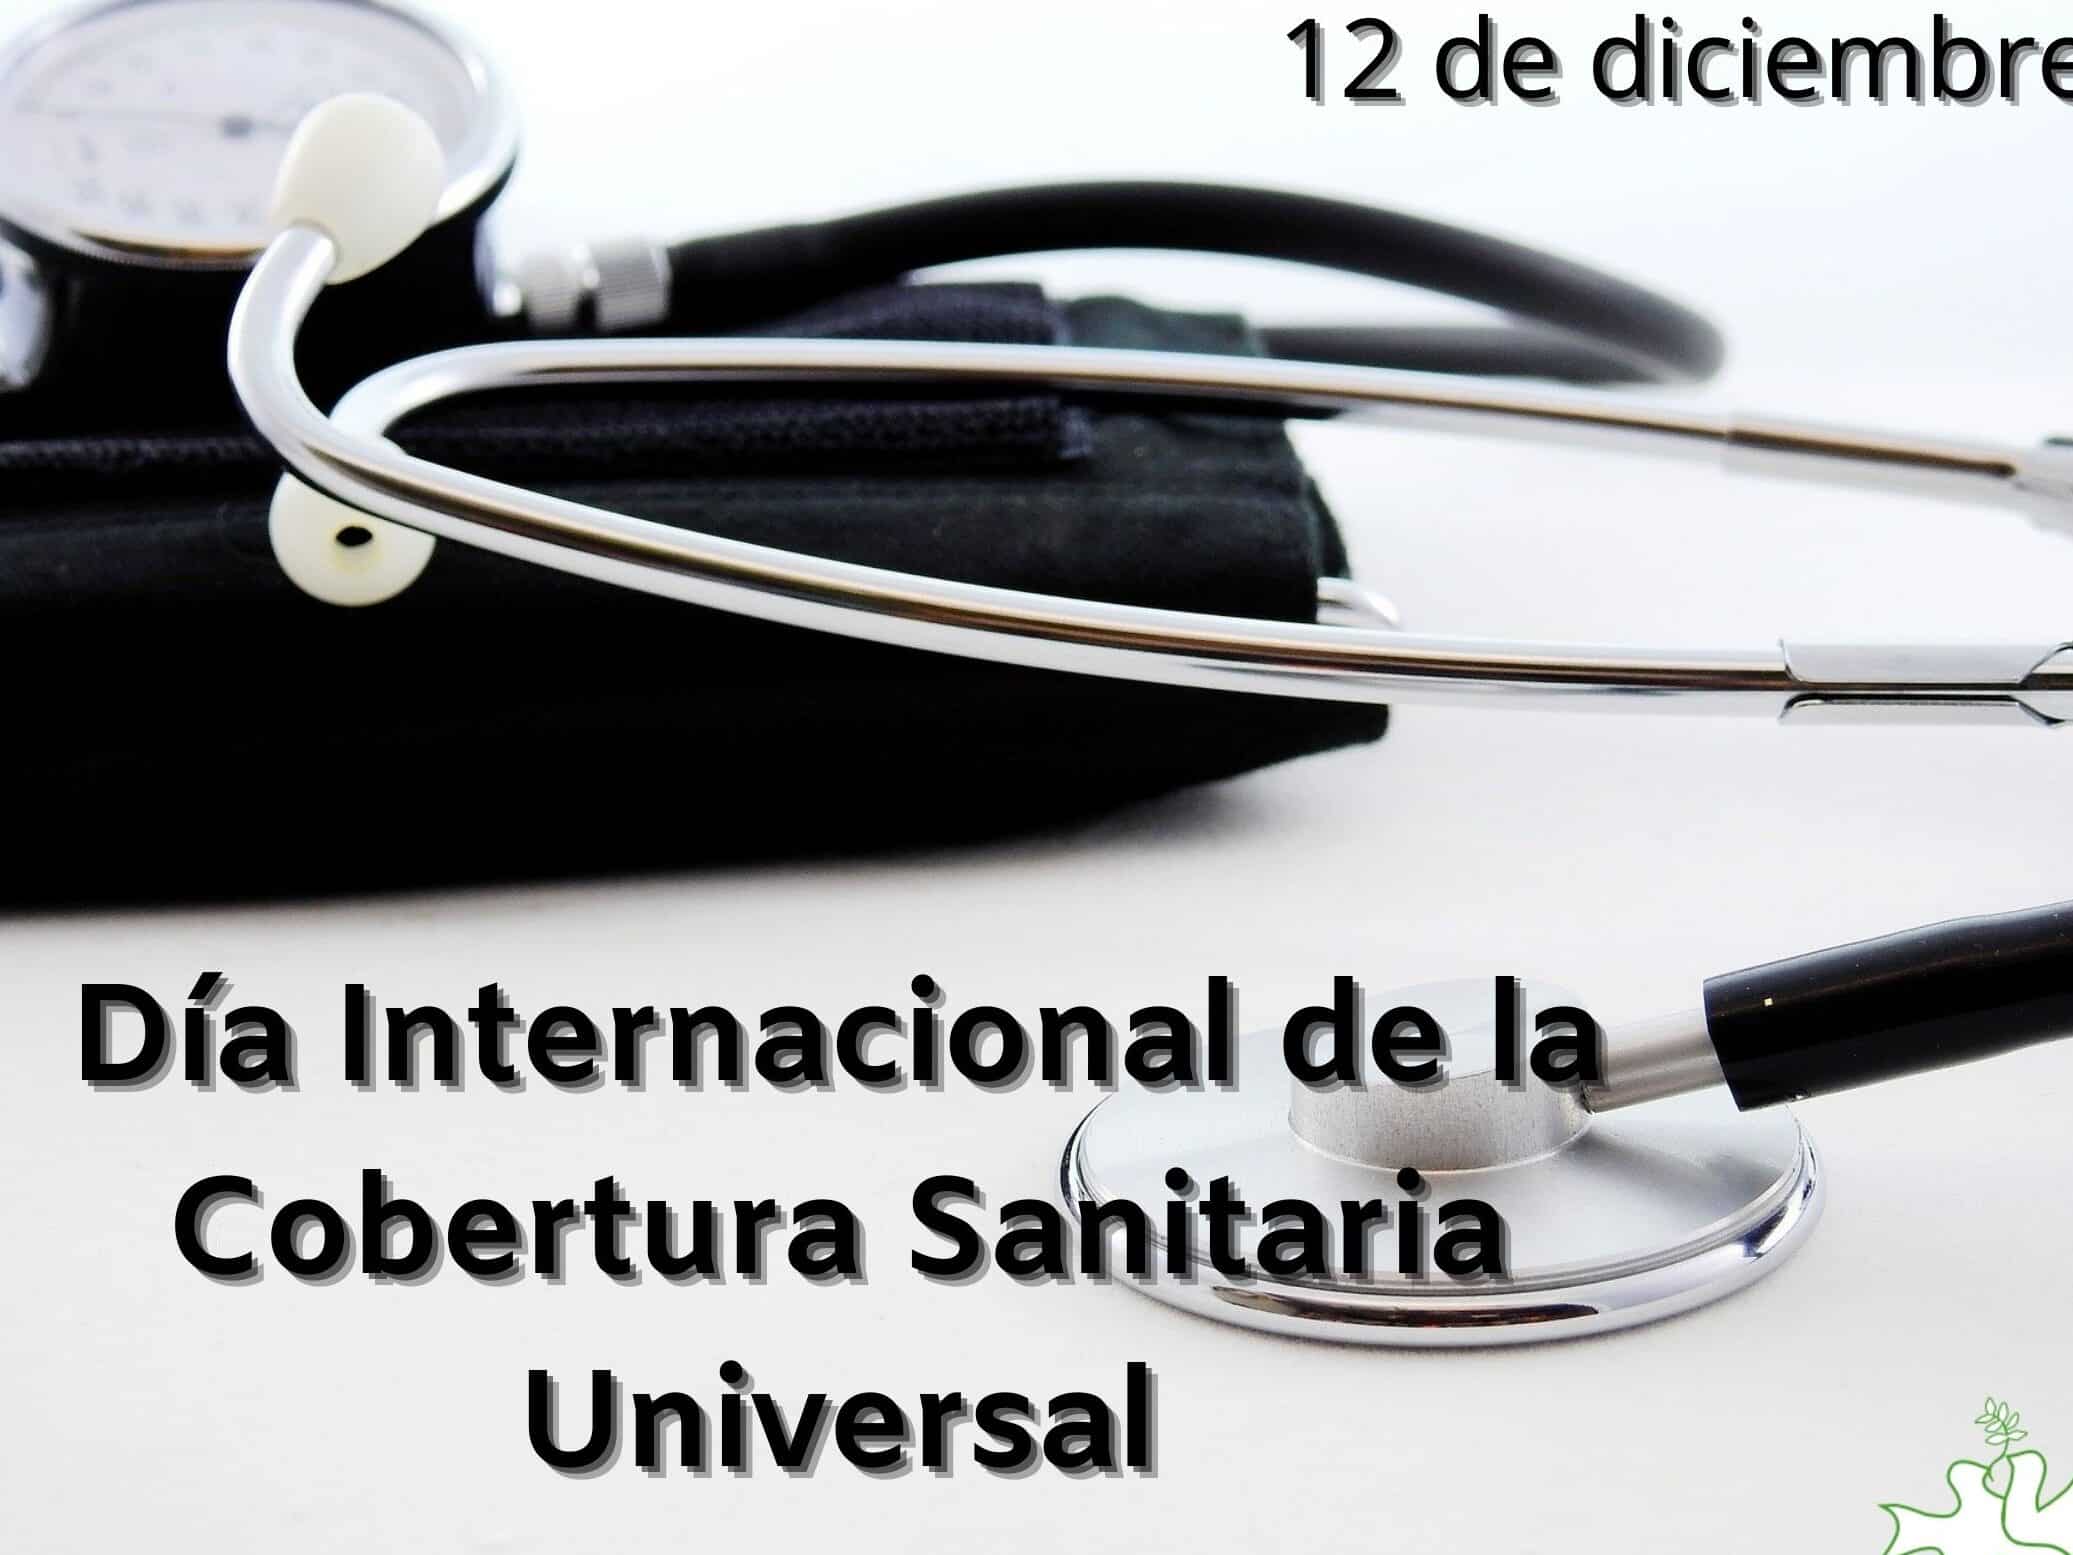 dia internacional de la cobertura sanitaria universal el dia 12 de diciembre